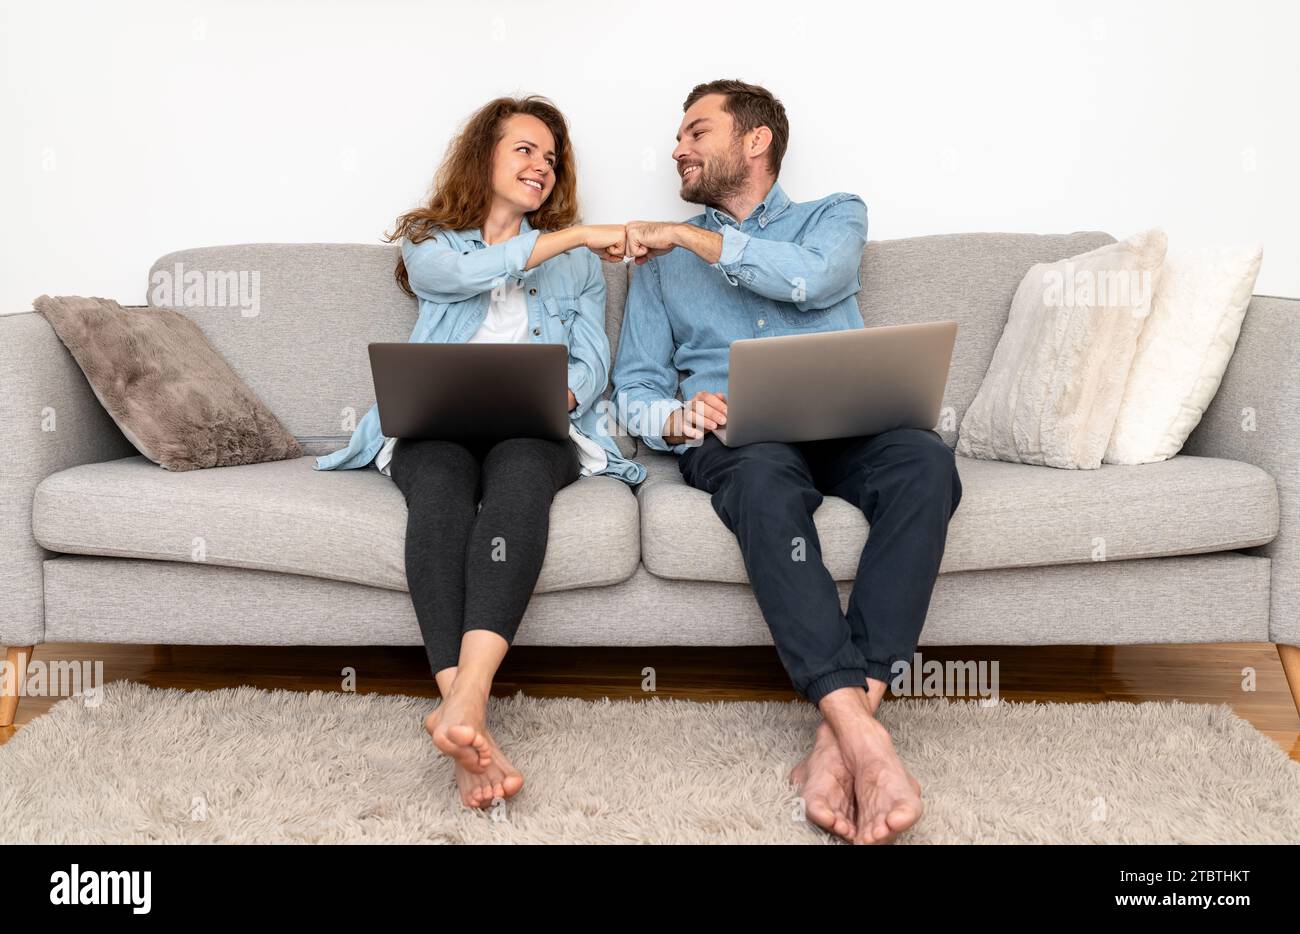 Ein Paar, das zu Hause an Laptops arbeitet und Faustschläge macht. Gegenseitiges Verständnis und Teamarbeit in der Familie. Stockfoto